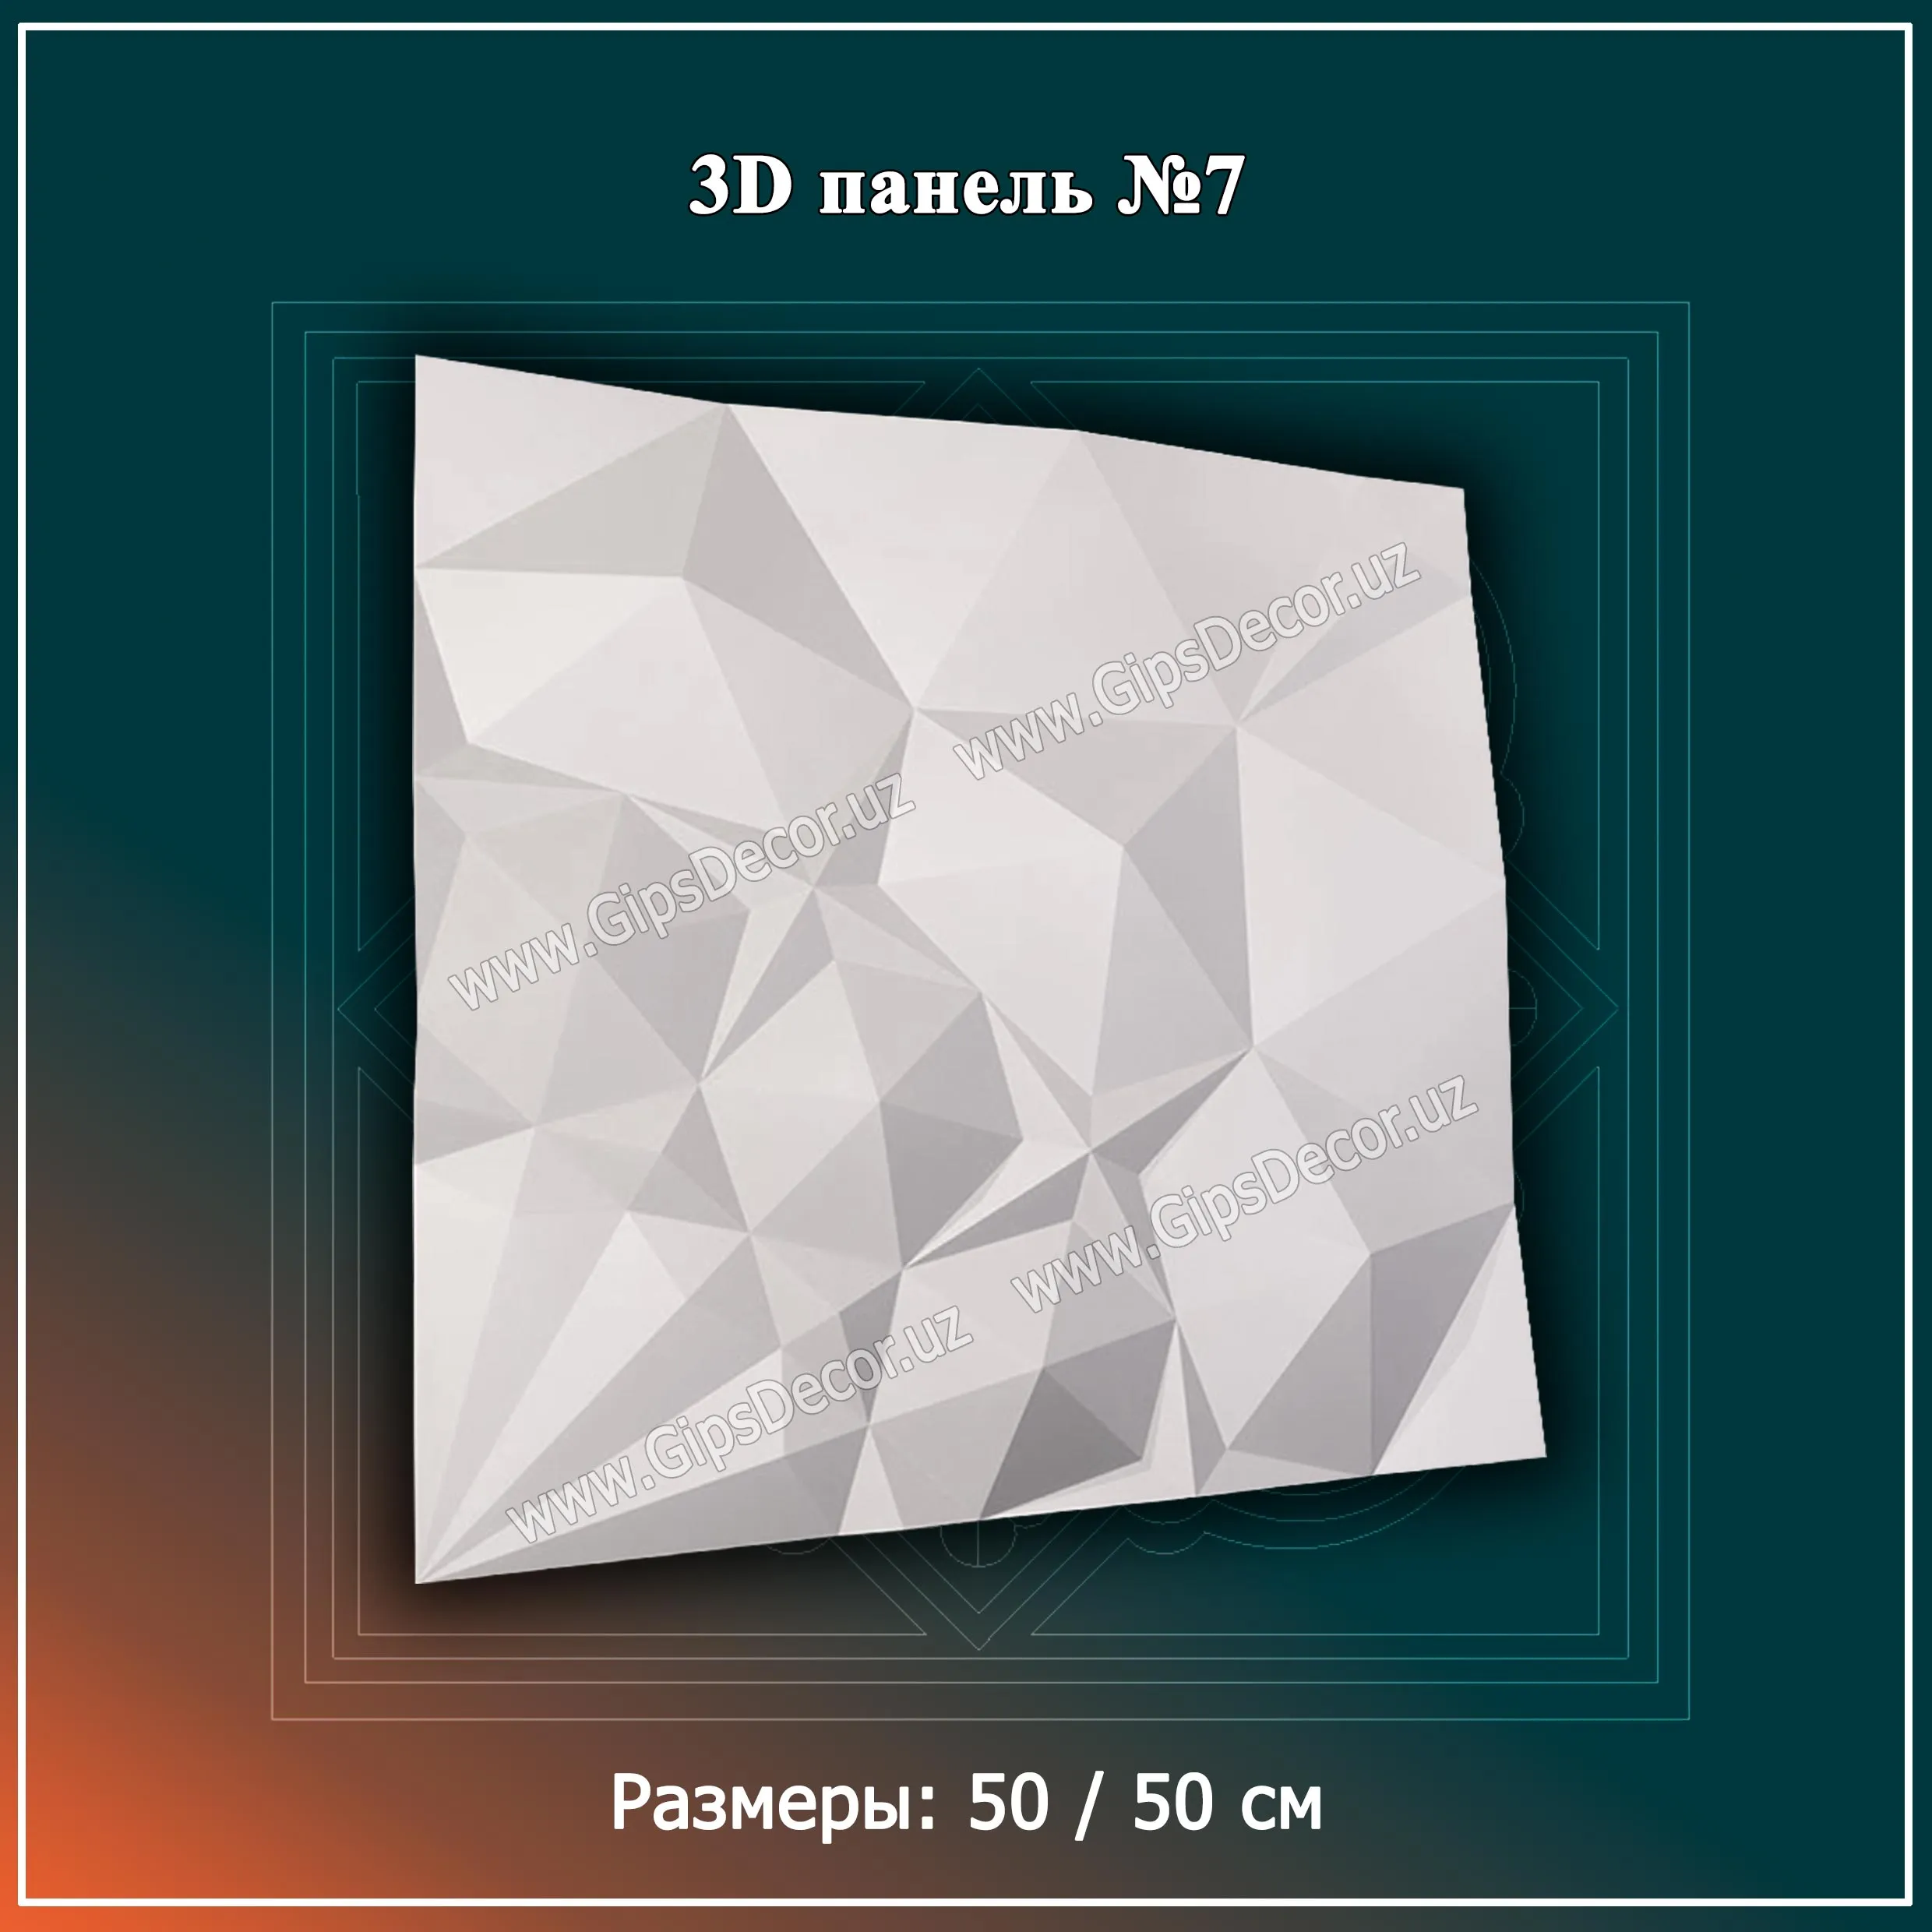 3D Панель №7 Размеры: 50 / 50 см#1